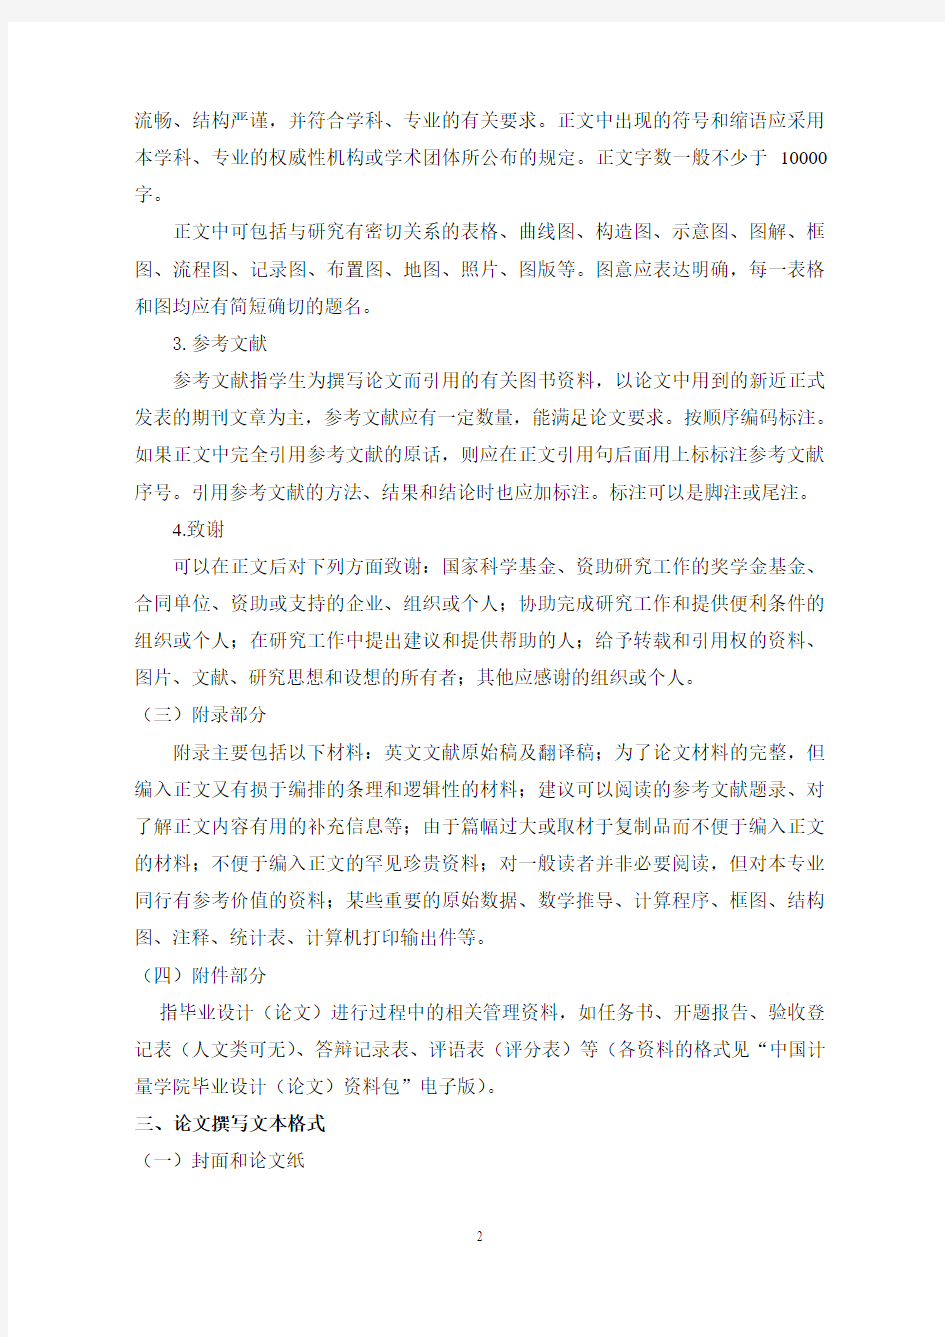 中国计量学院本科毕业论文撰写格式要求